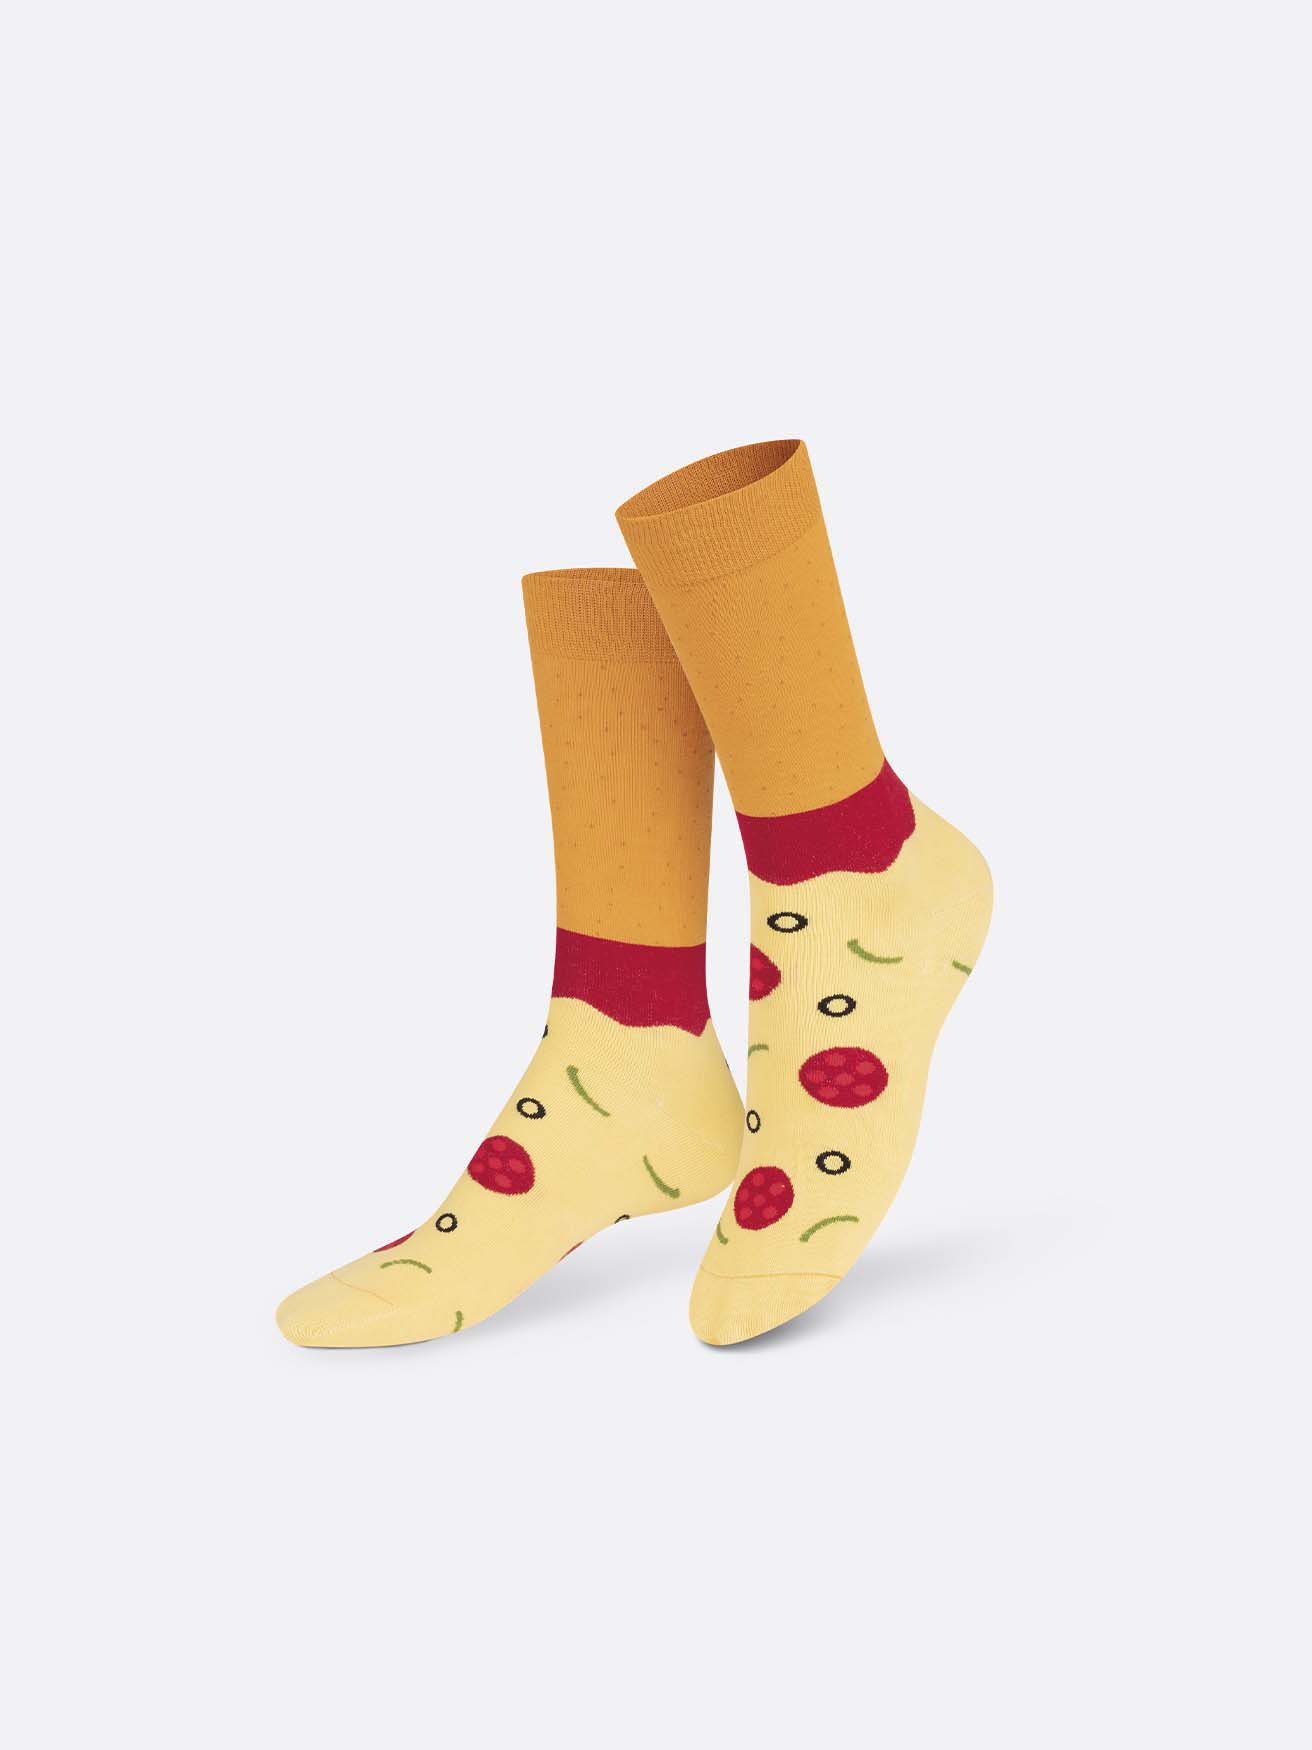 Napoli Pizza Socks - Socks